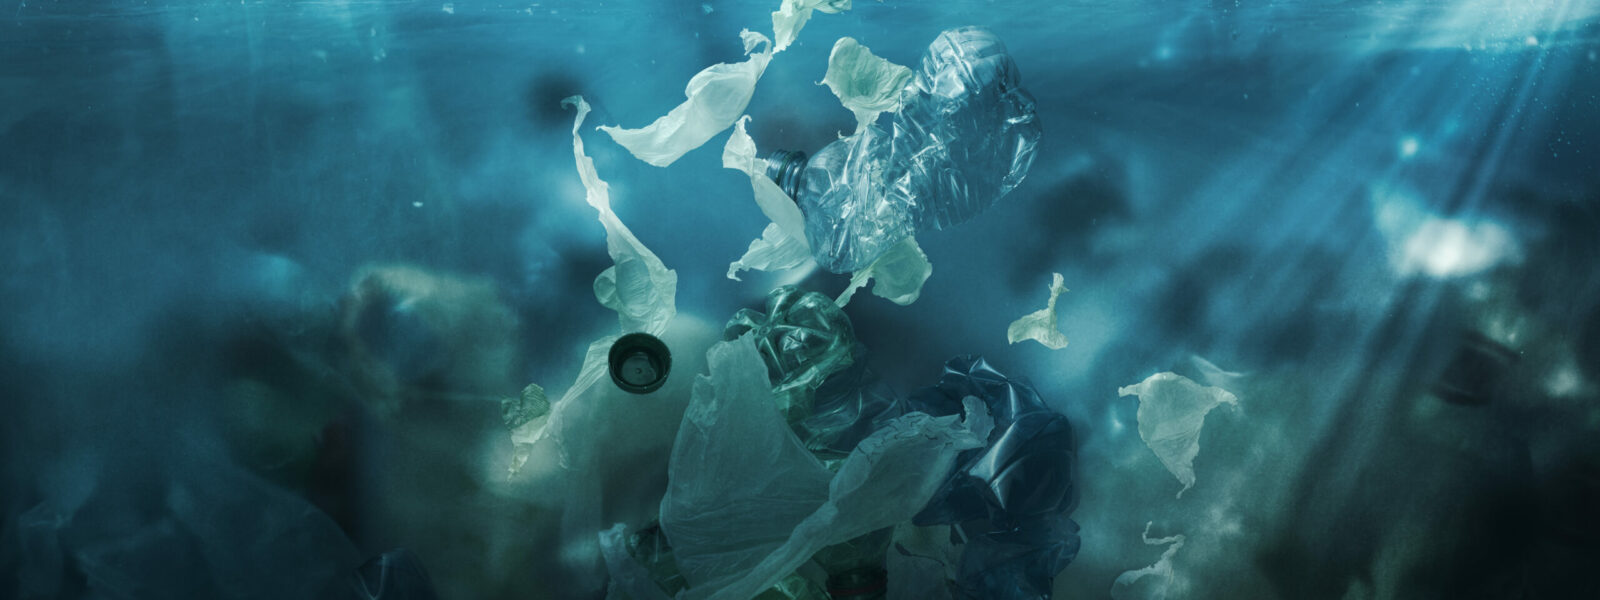 Toxic plastic waste floating underwater in the ocean